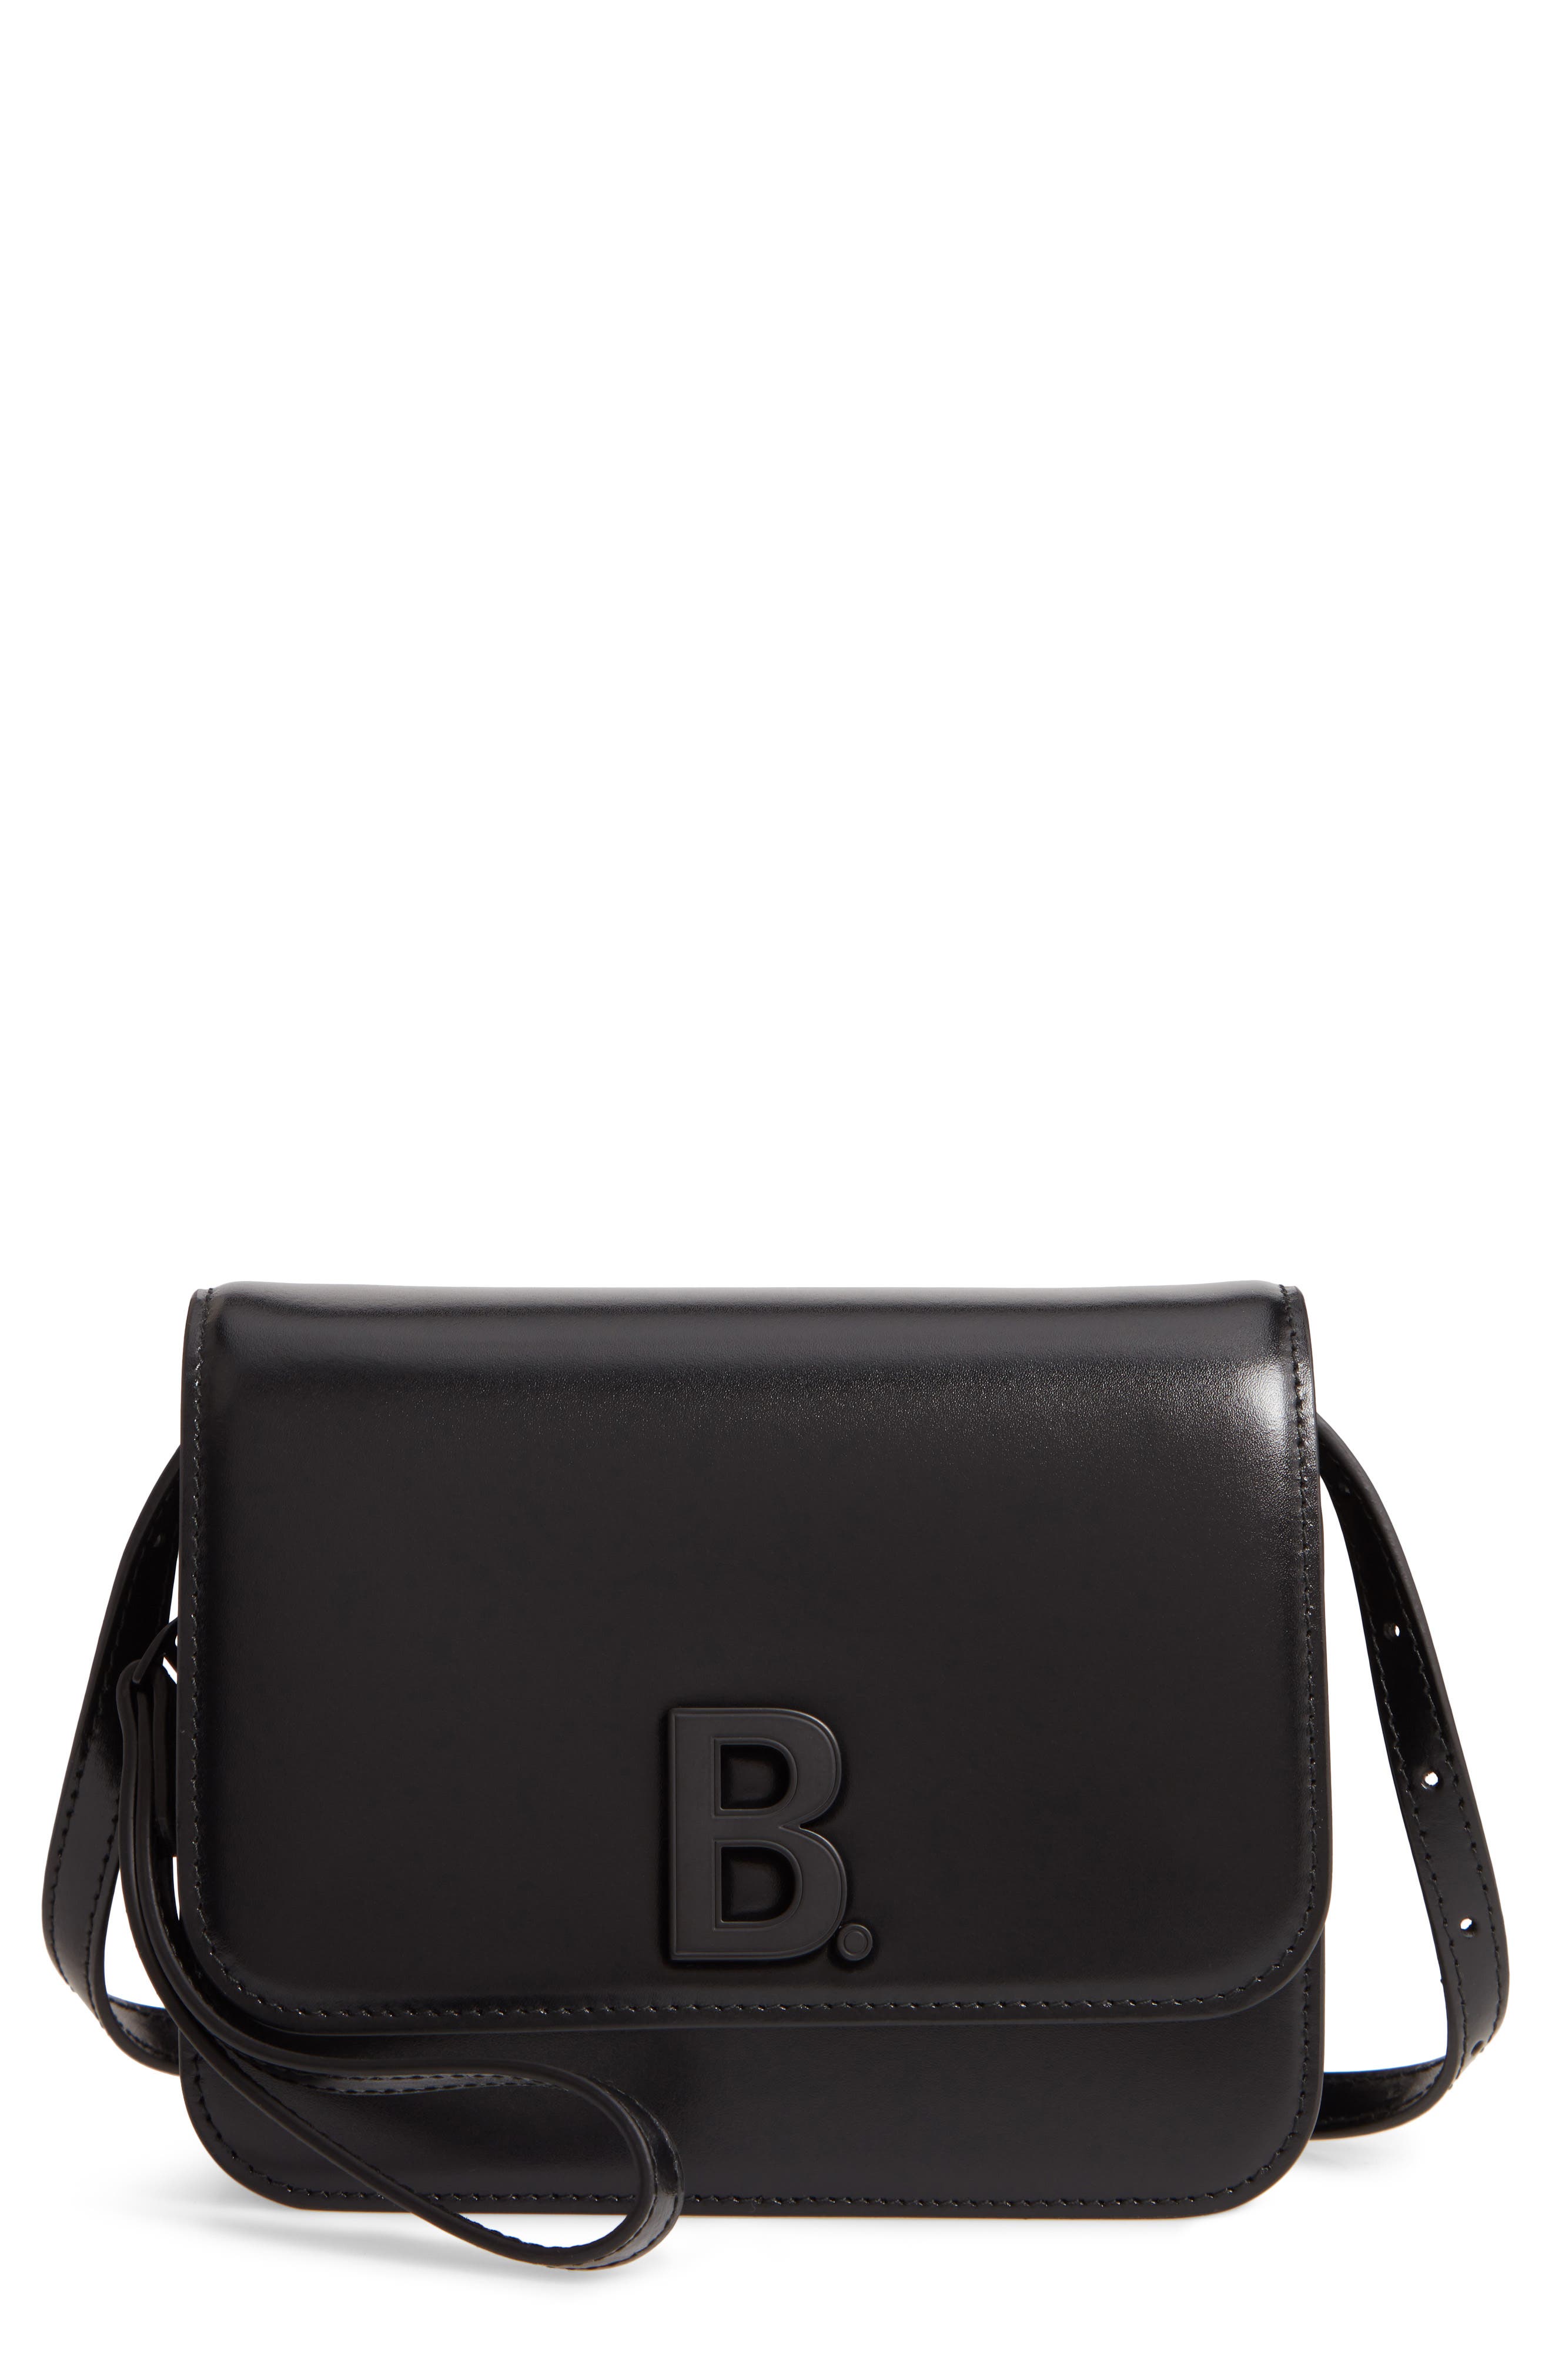 Balenciaga B Bag Cheap Sale, 58% OFF | www.gruposincom.es